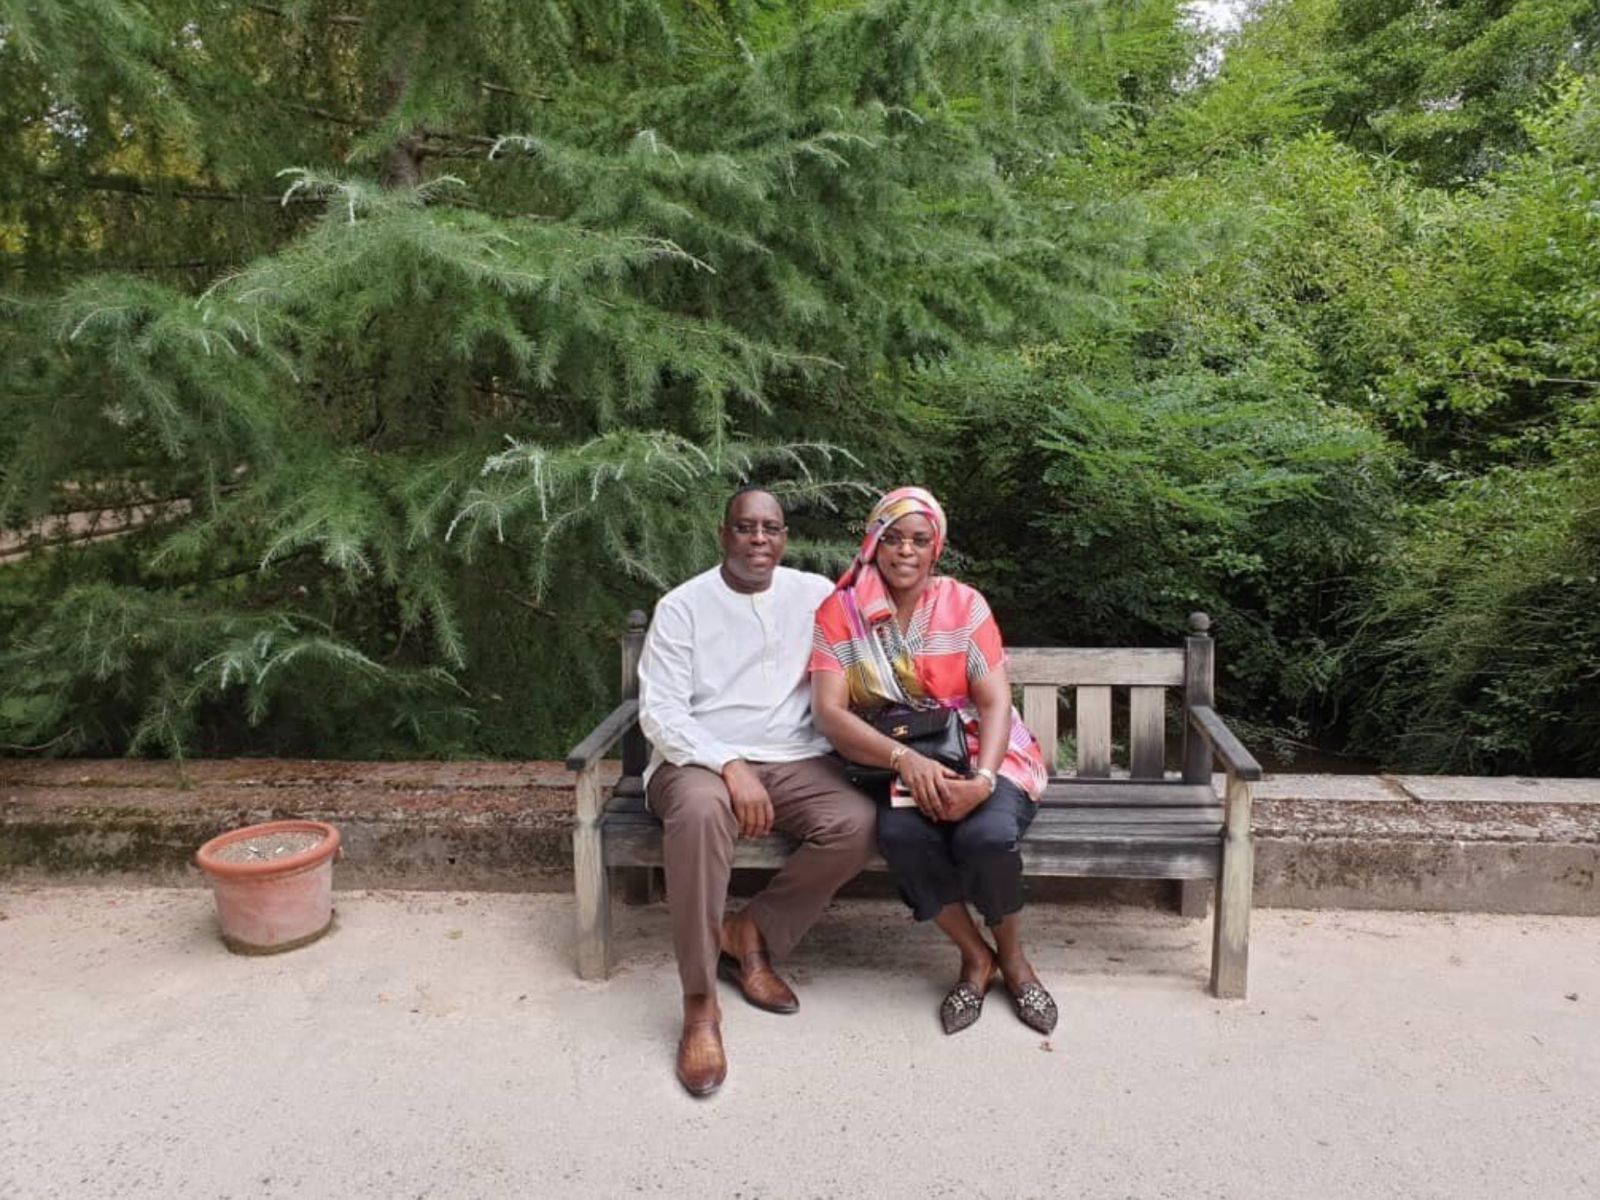 [ARRÊT SUR IMAGE] Macky et Marième Faye Sall en vacances dans le sud de la France